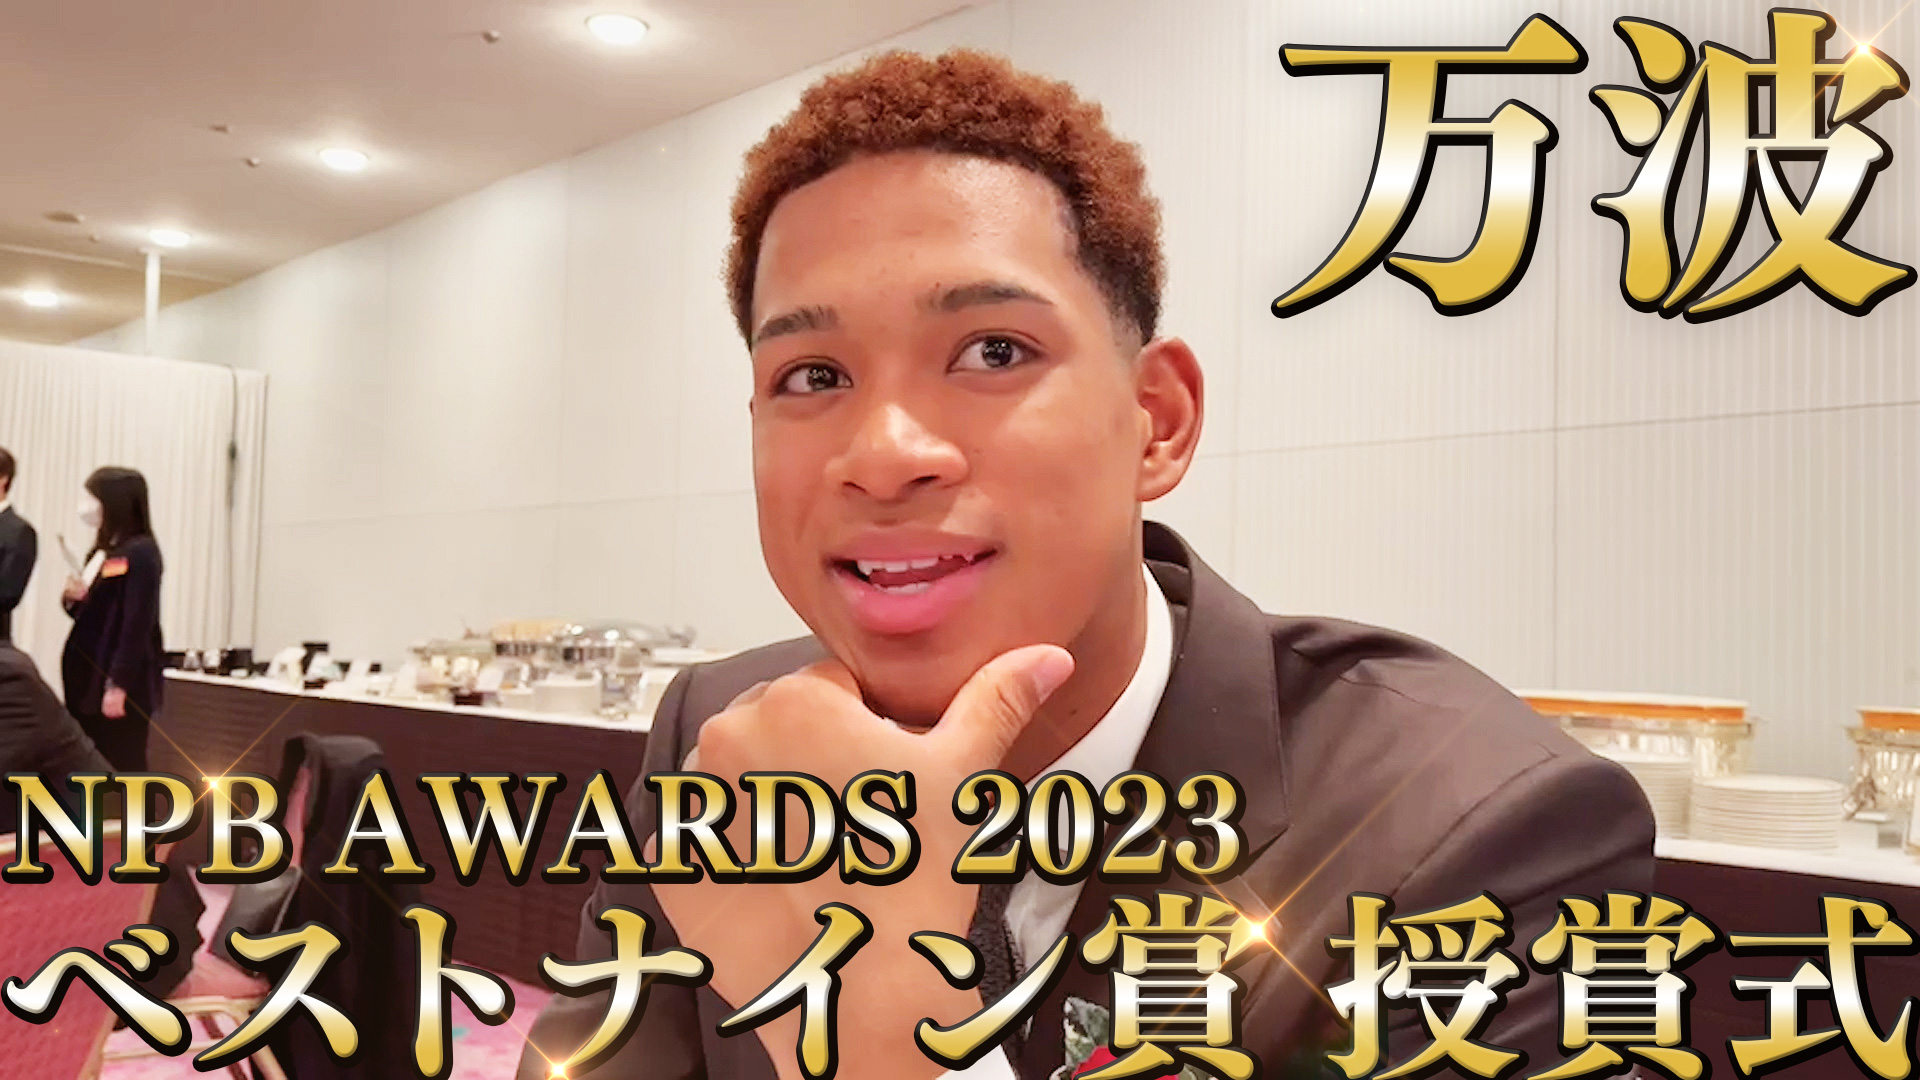 【万波】NPB AWARDS 2023 ベストナイン賞 授賞式